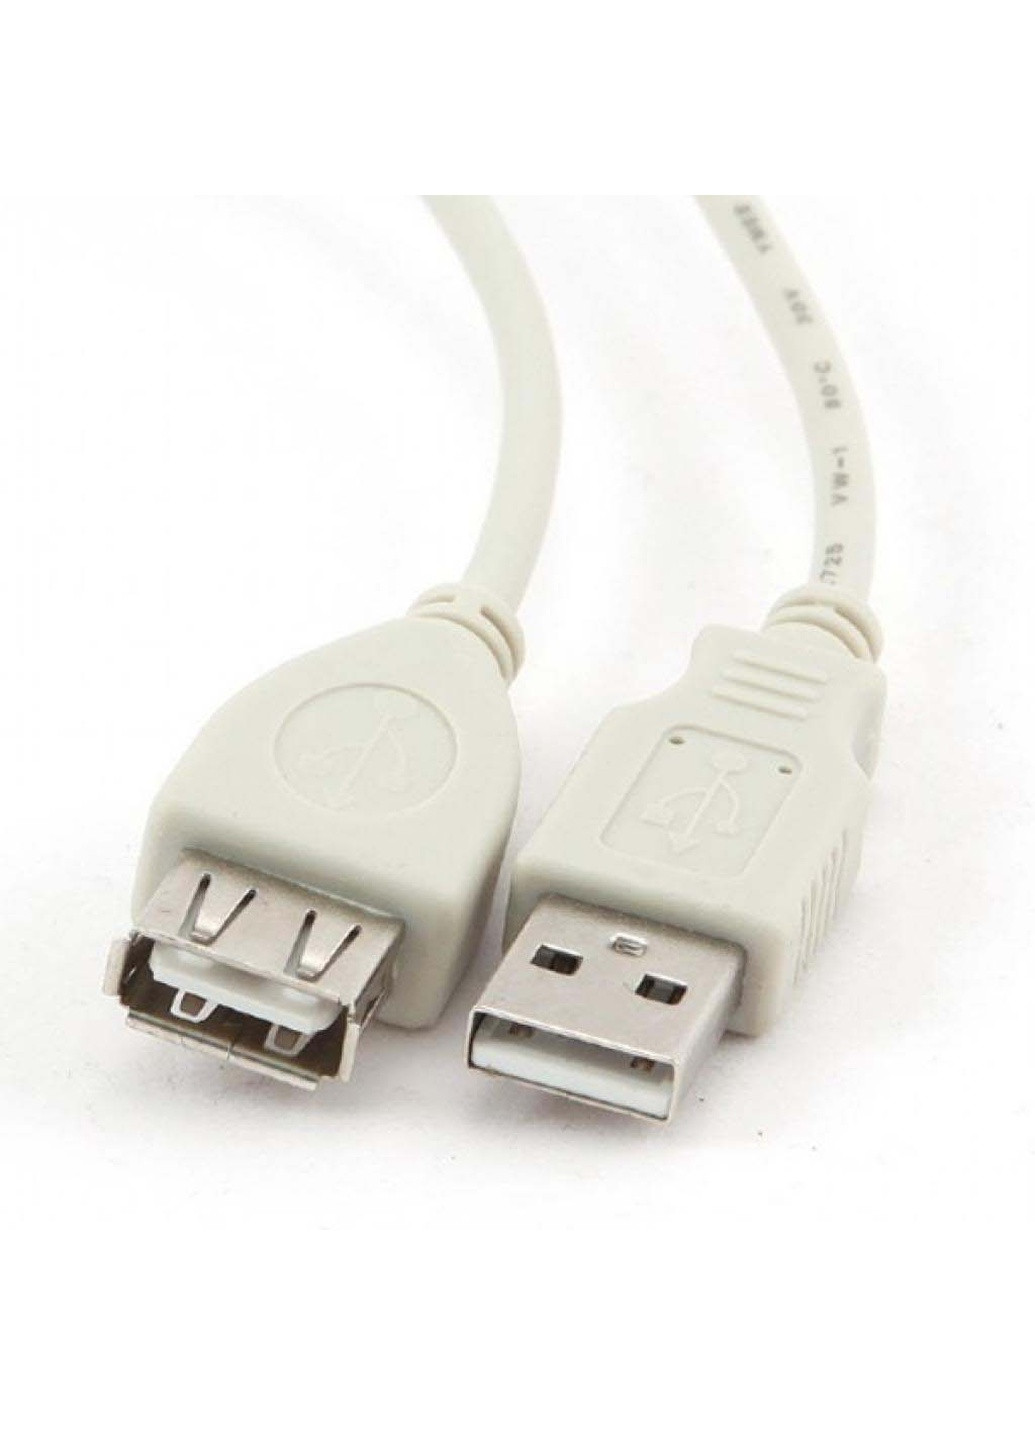 Дата кабель USB 2.0 AM / AF 0.75m (CC-USB2-AMAF-75CM / 300) Cablexpert usb 2.0 am/af 0.75m (239382866)